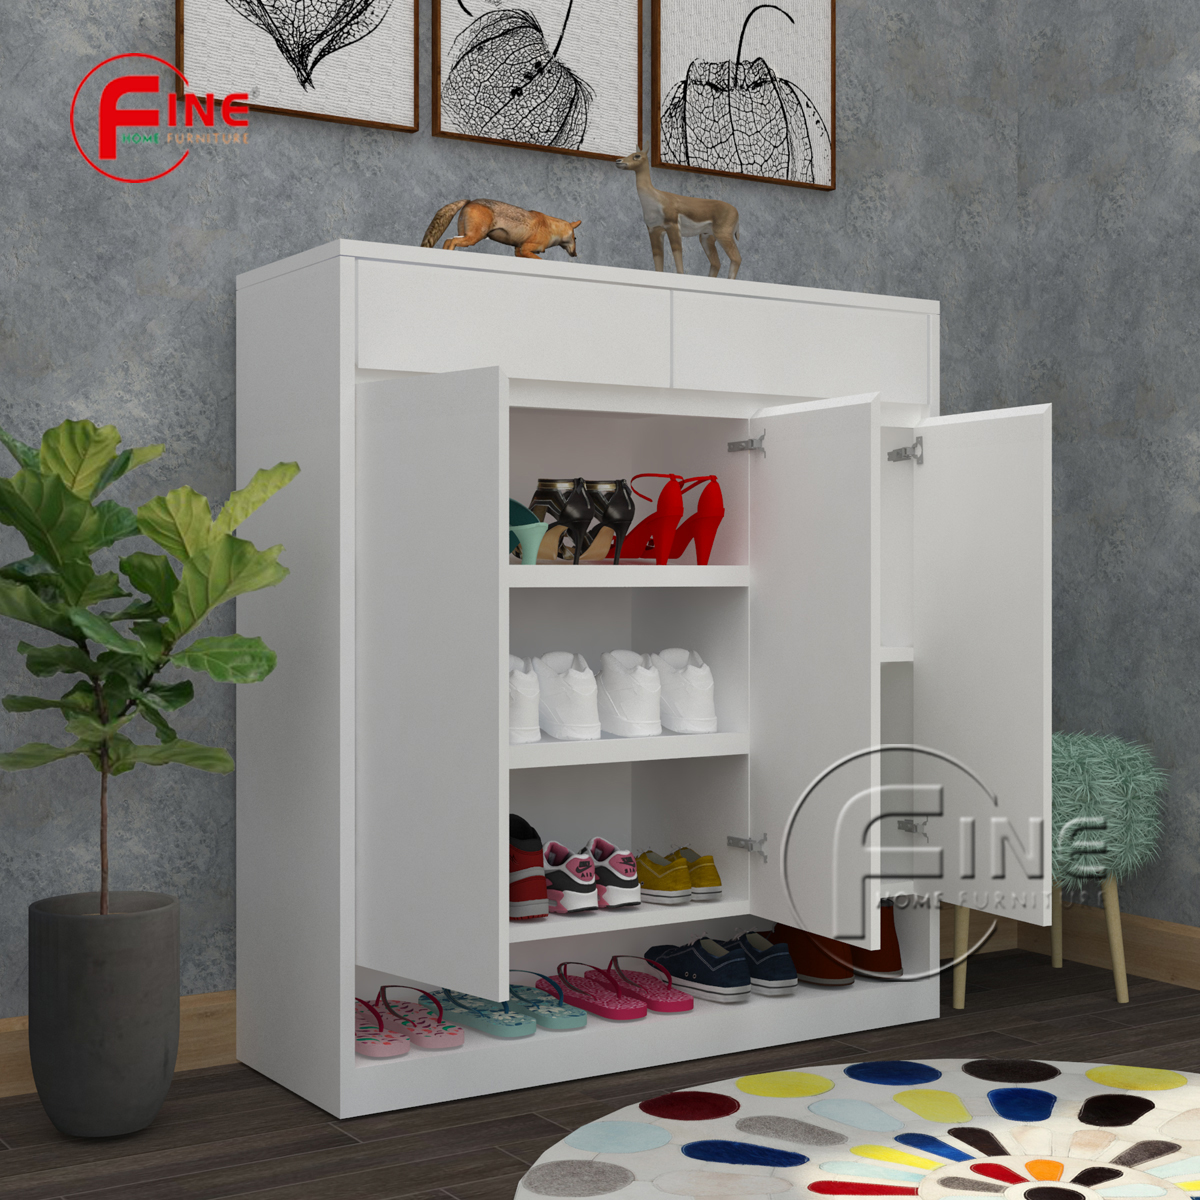 Tủ Giày Dép FINE hiện đại sang trọng phong cách thời trang FTG016 phù hợp cho Căn Hộ, Nhà Phố